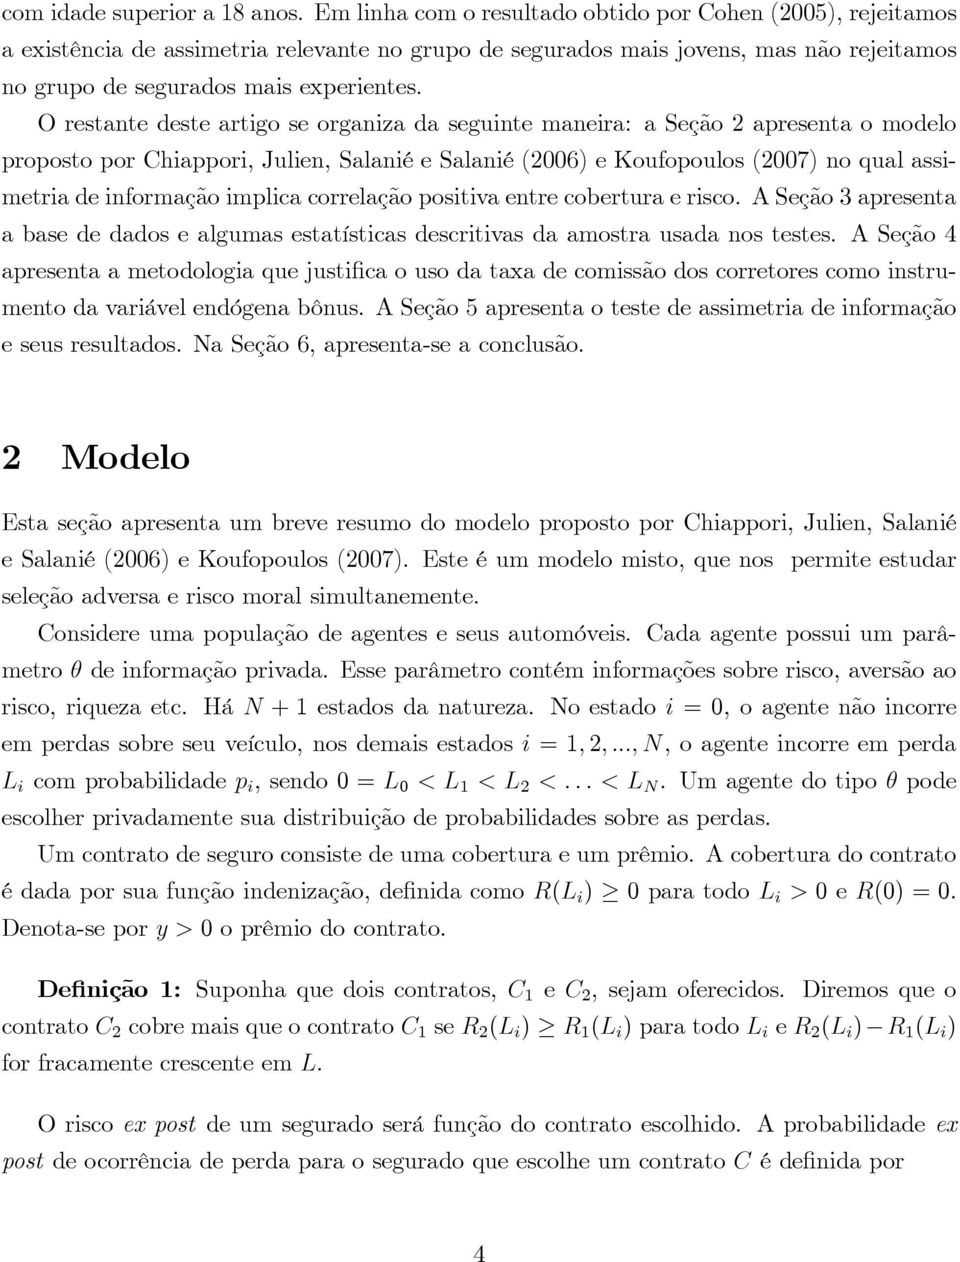 O restante deste artigo se organiza da seguinte maneira: a Seção 2 apresenta o modelo proposto por Chiappori, Julien, Salanié e Salanié(2006) e Koufopoulos(2007) no qual assimetria de informação